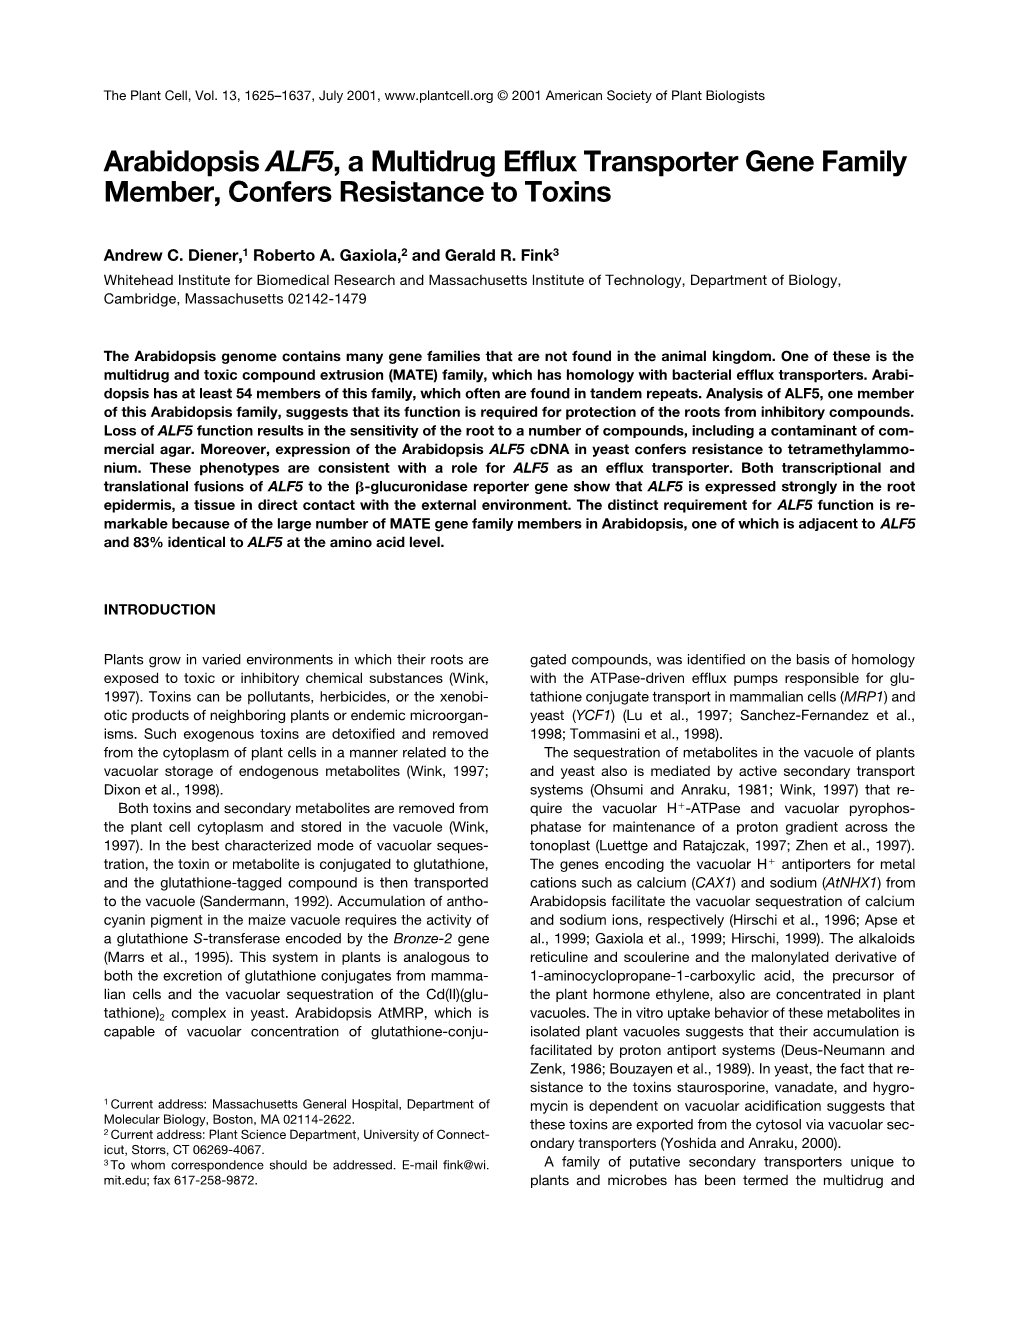 Arabidopsis ALF5, a Multidrug Efflux Transporter Gene Family Member, Confers Resistance to Toxins